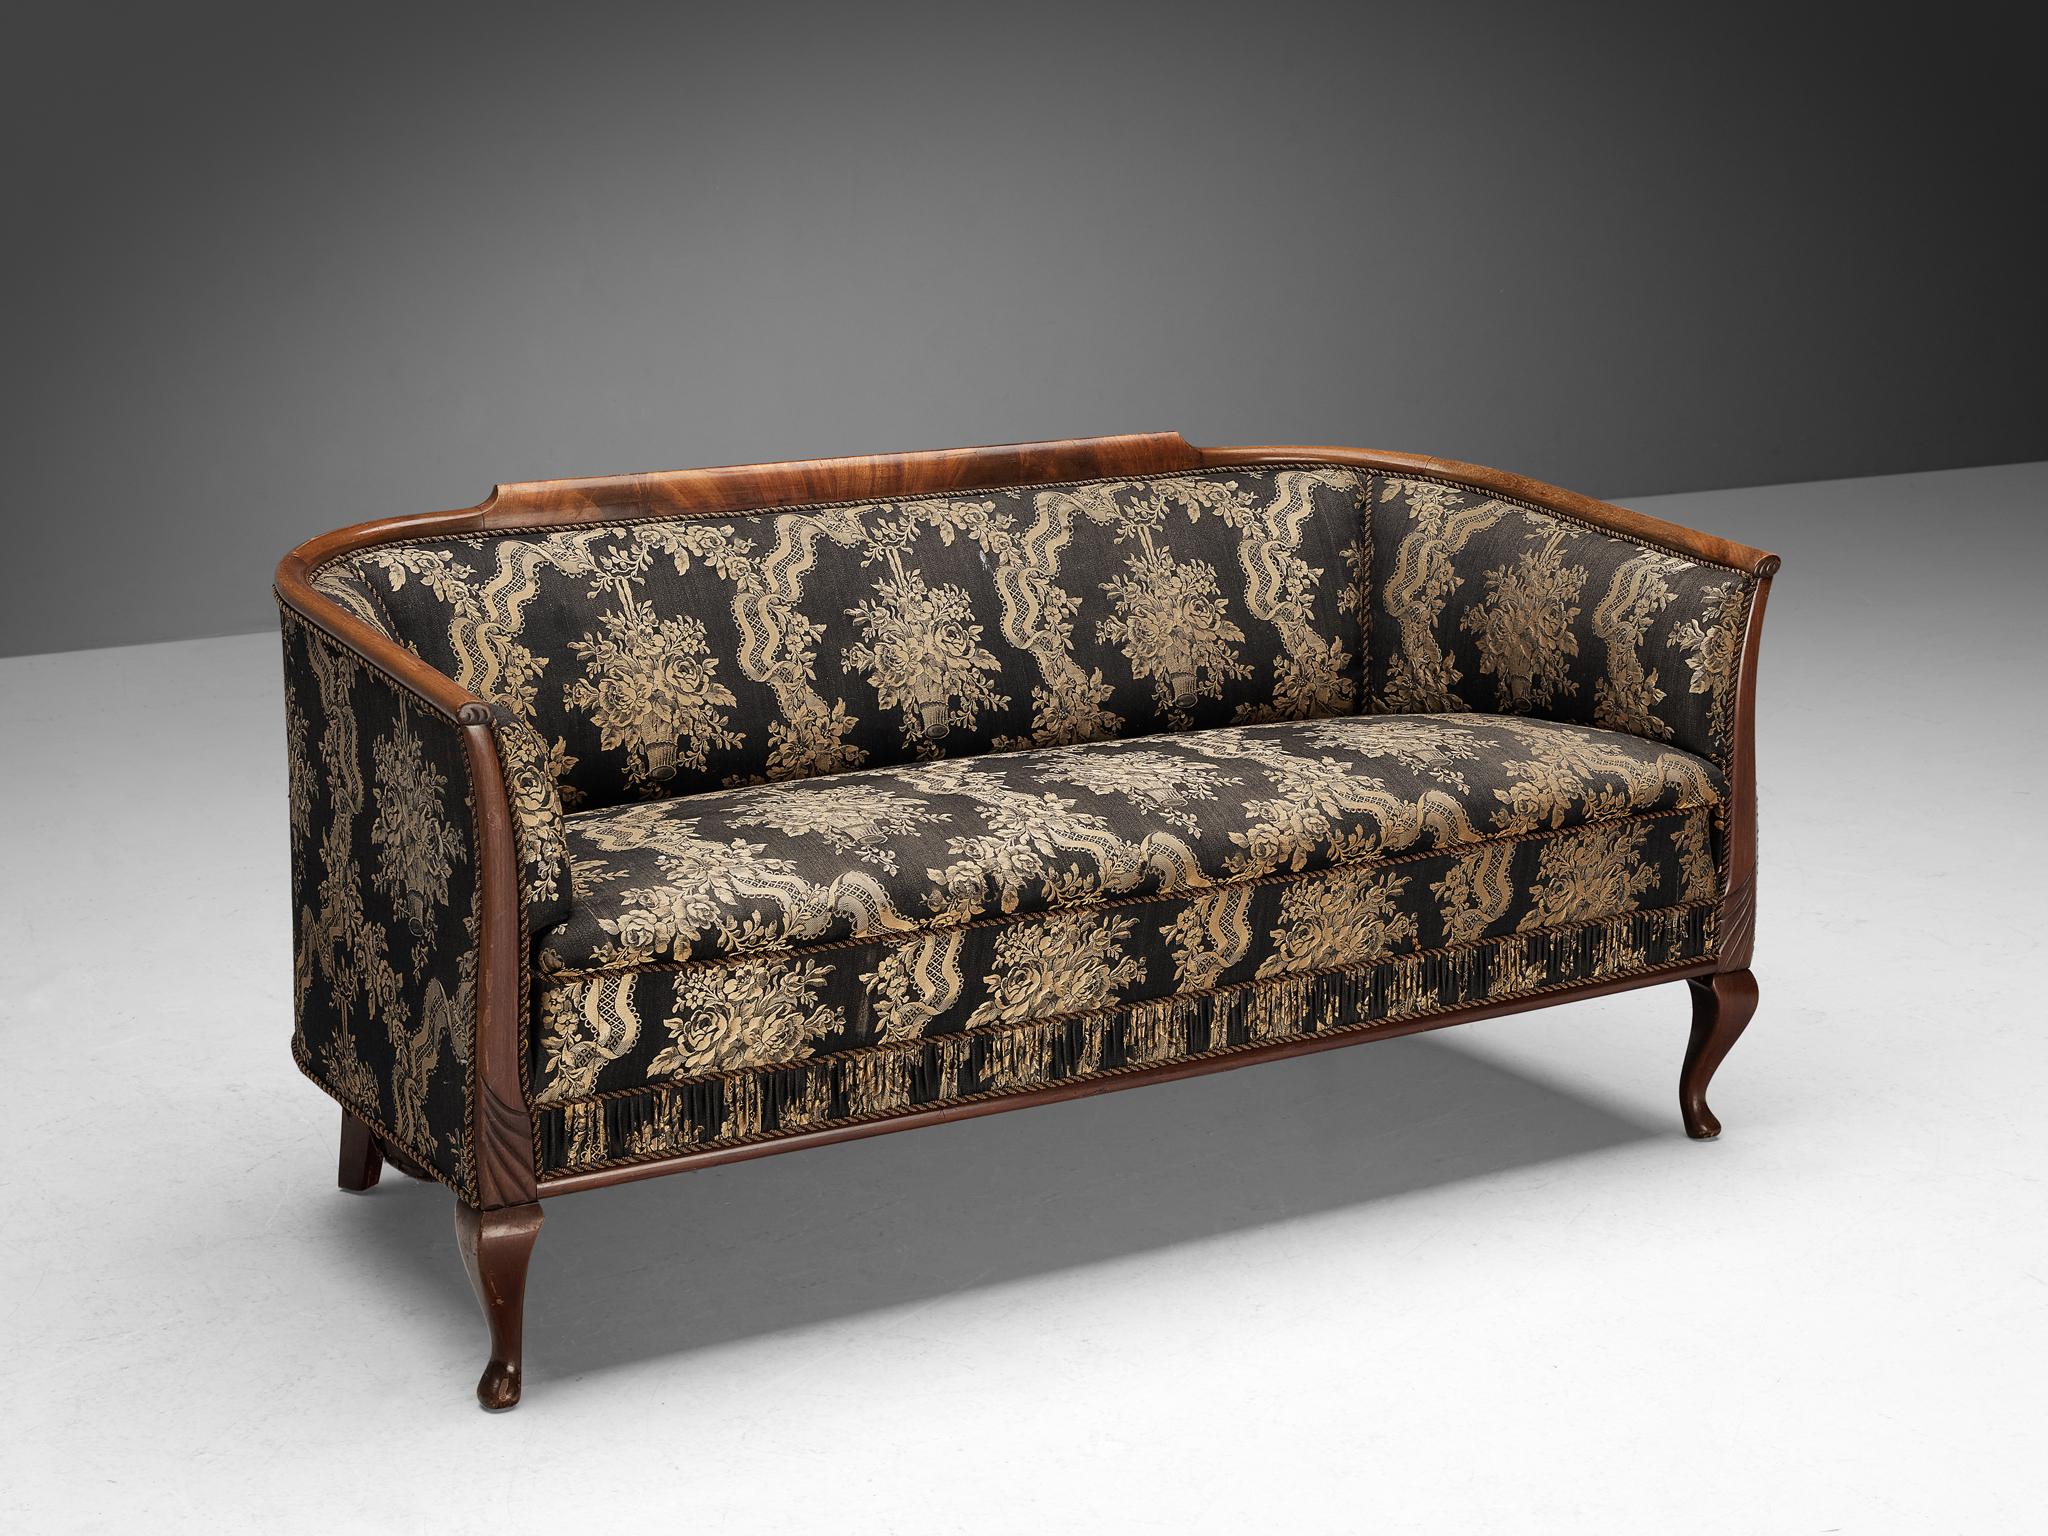 Sofa oder Sofagarnitur, Stoff, gebeizte Buche, Nussbaum, Dänemark, 1940er Jahre.

Dieses Sofa verdankt seine Eleganz der Art und Weise, wie der Korpus gebaut ist: ein dünner Rahmen, der auf schön geformten Beinen ruht, die auf die stilistischen